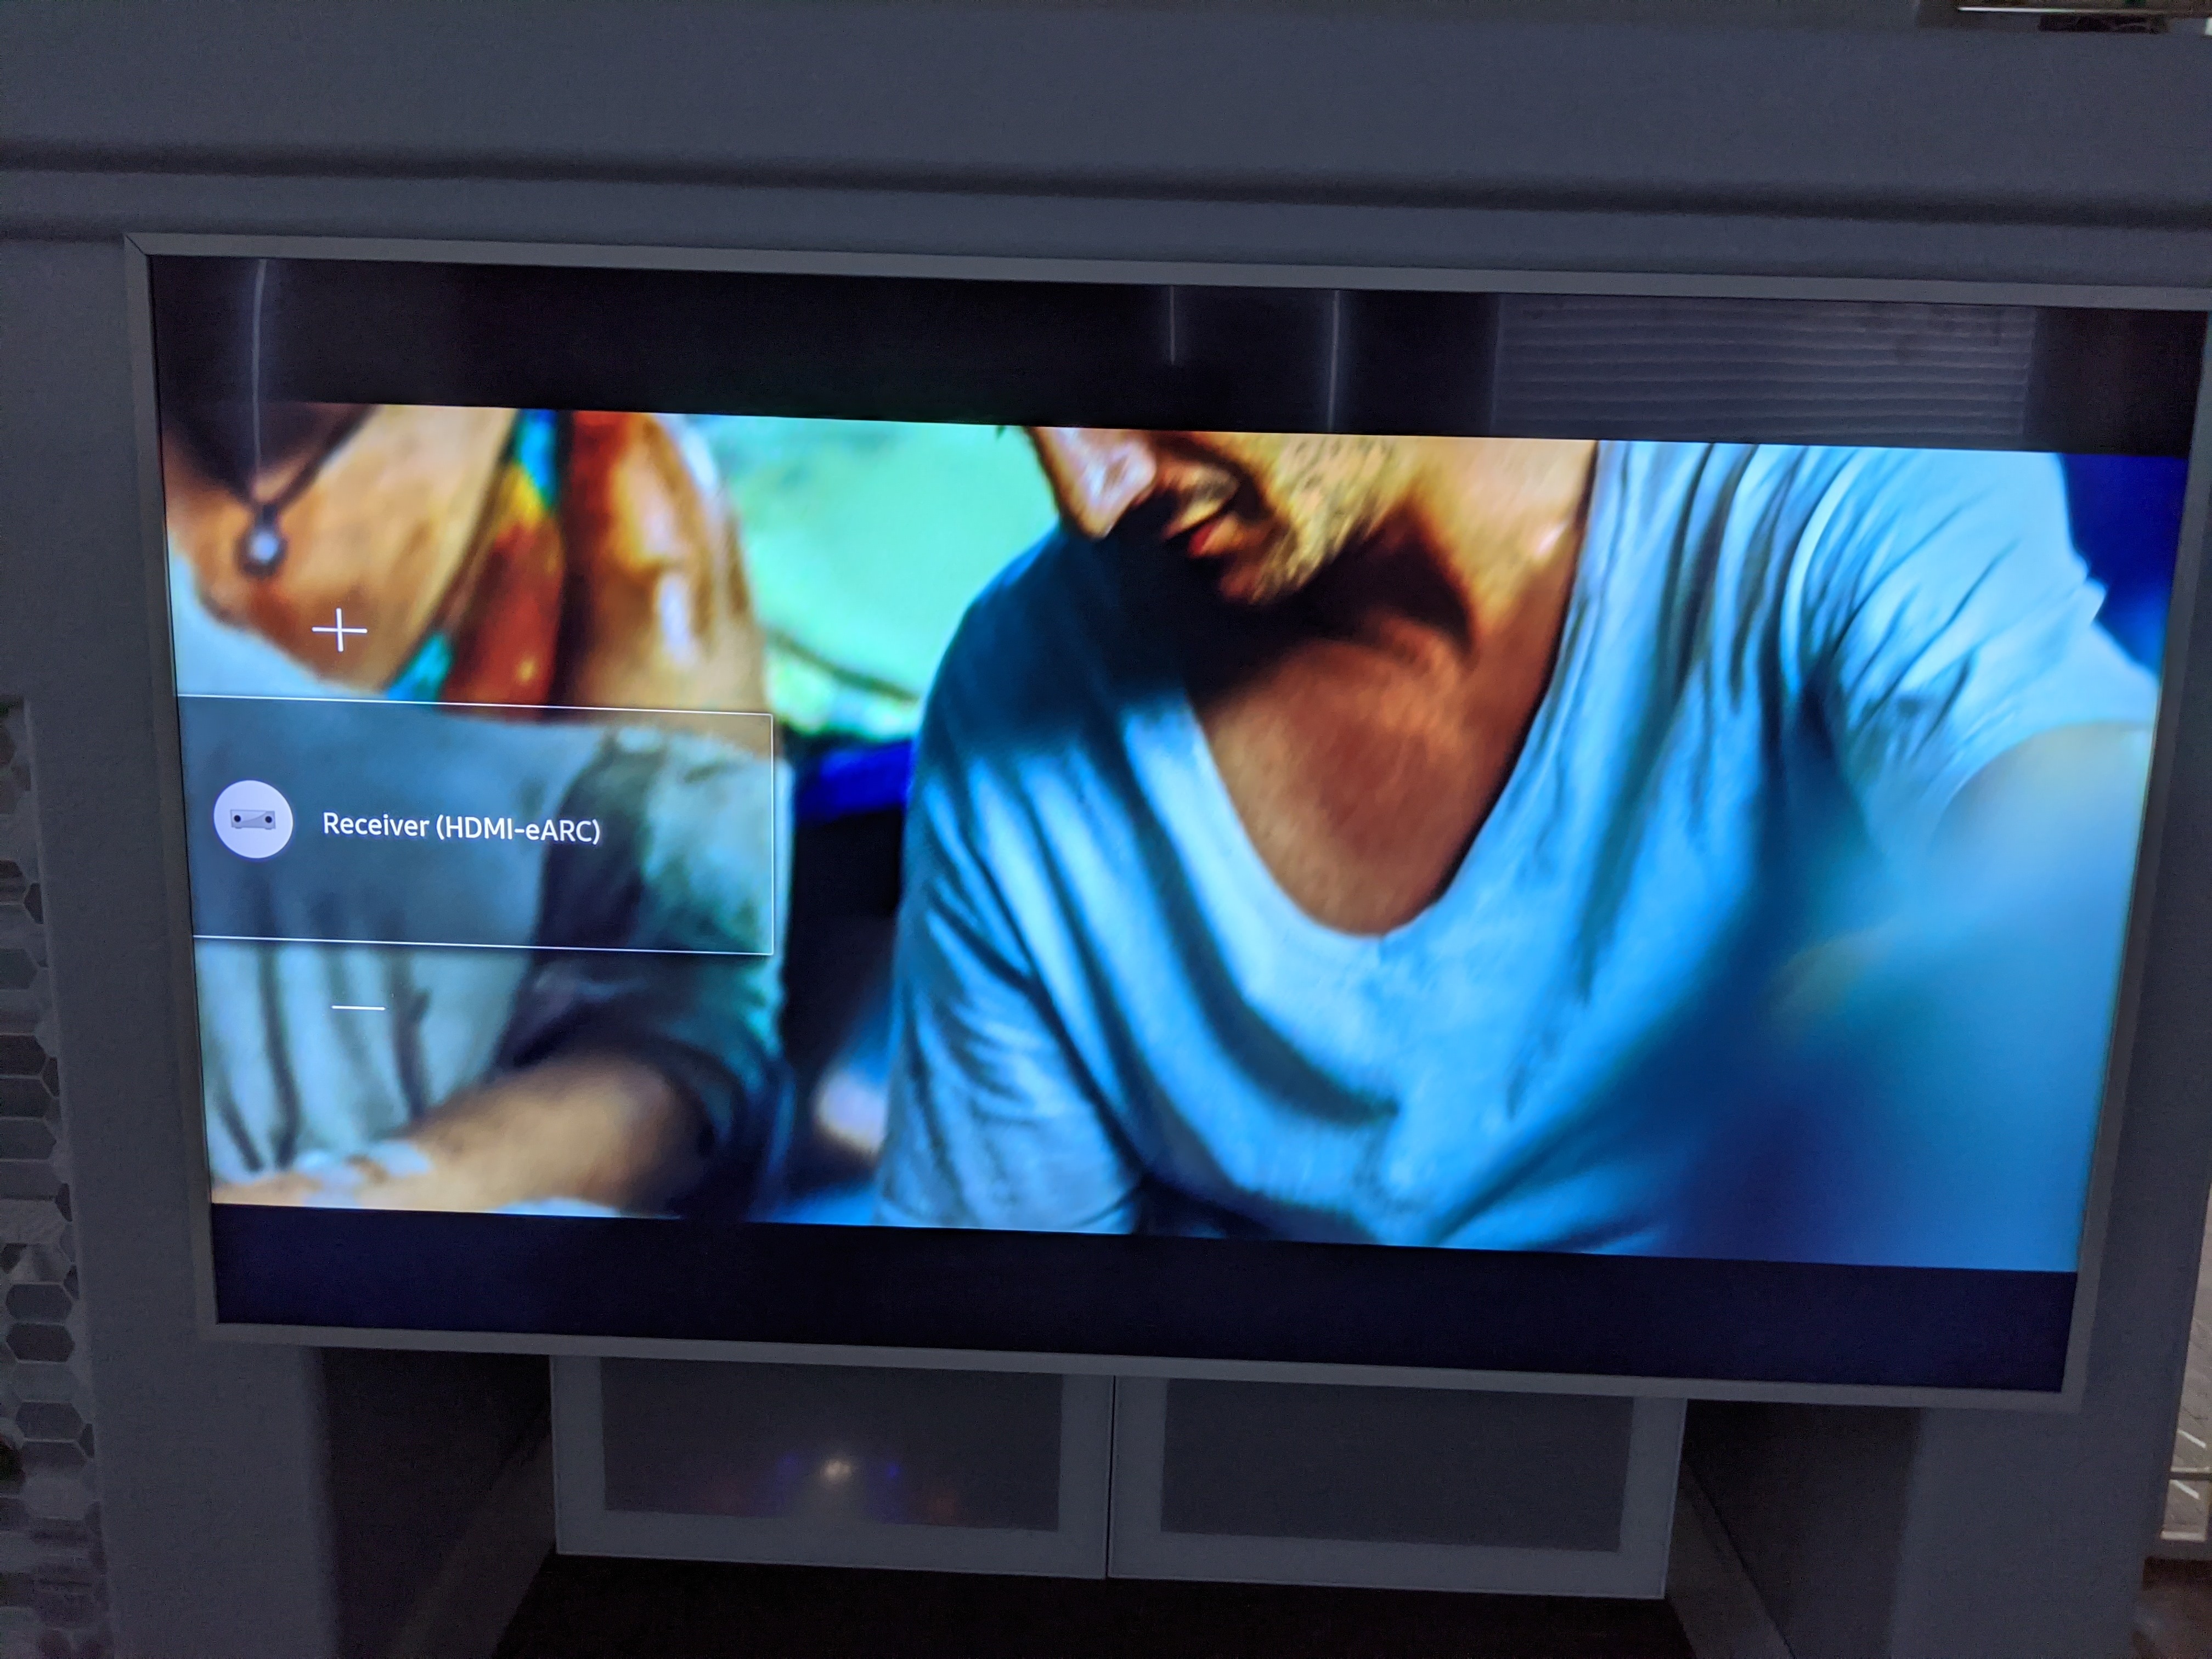 Billedhugger Vind ser godt ud Samsung Frame TV and Sonos audio | Sonos Community